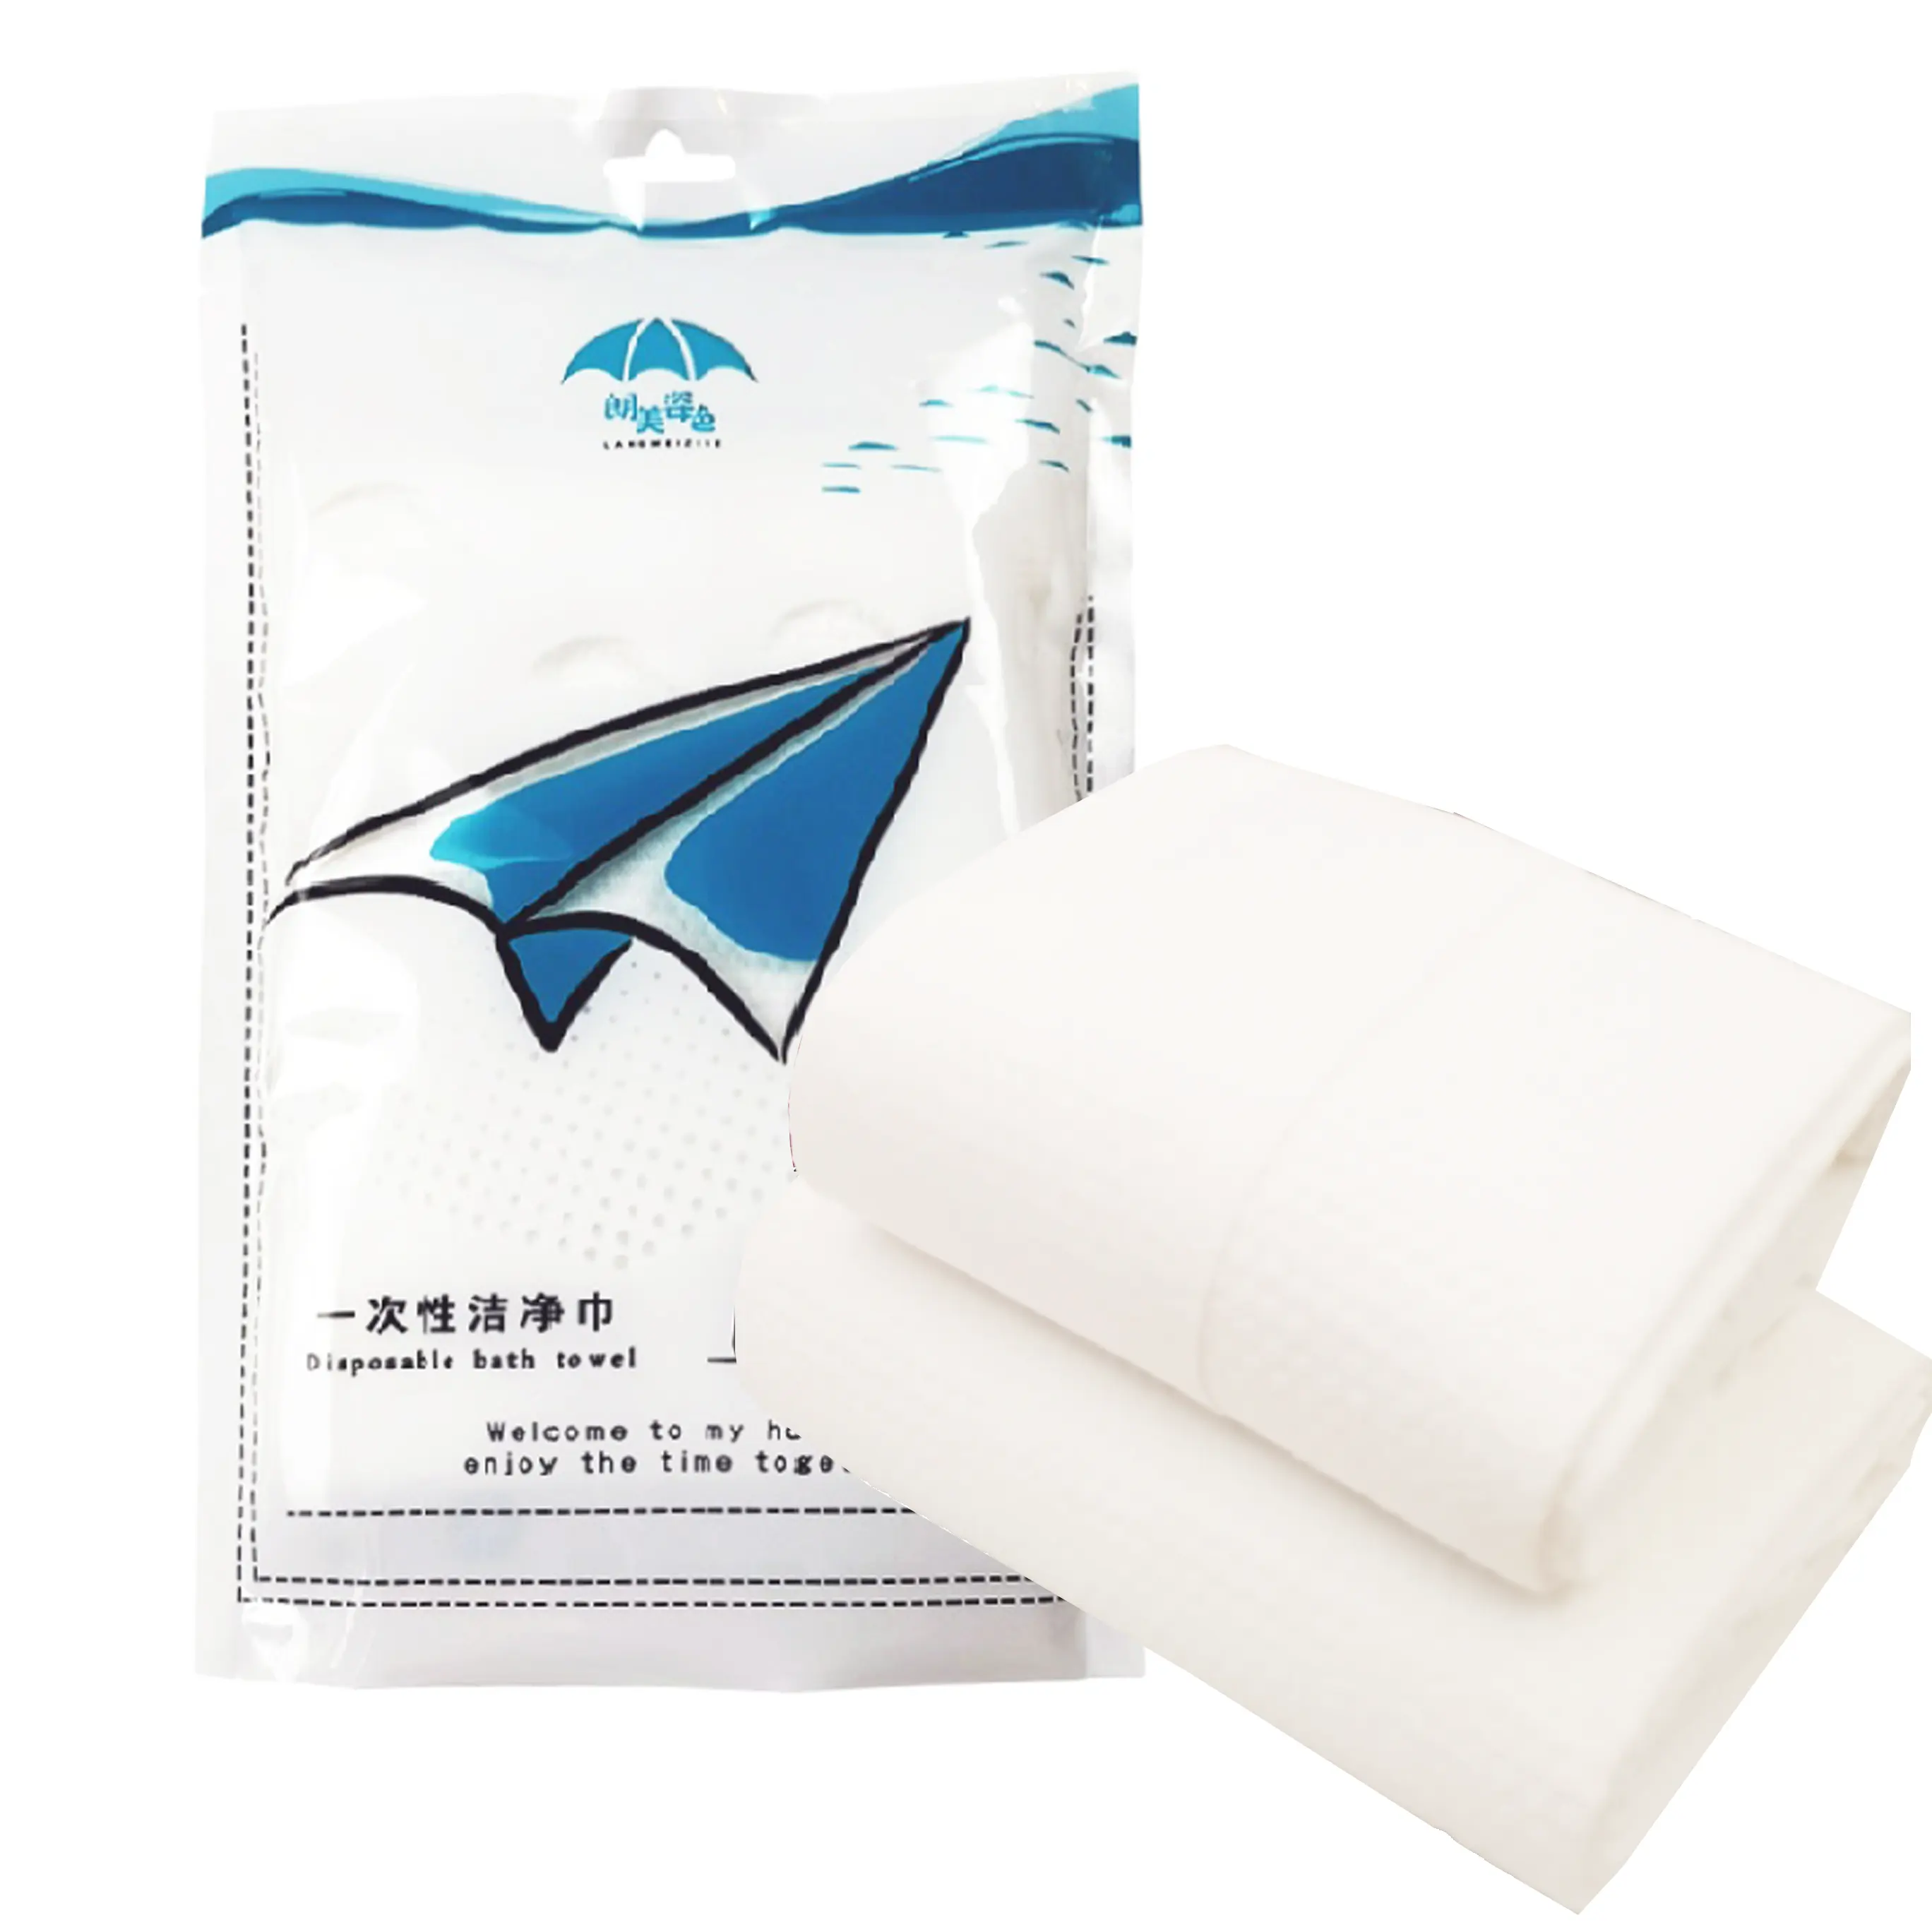 2 piezas de tela no tejida 100% viscosa toalla desechable para envolver el cuerpo, toalla de ducha desechable, juego de toallas de baño desechables